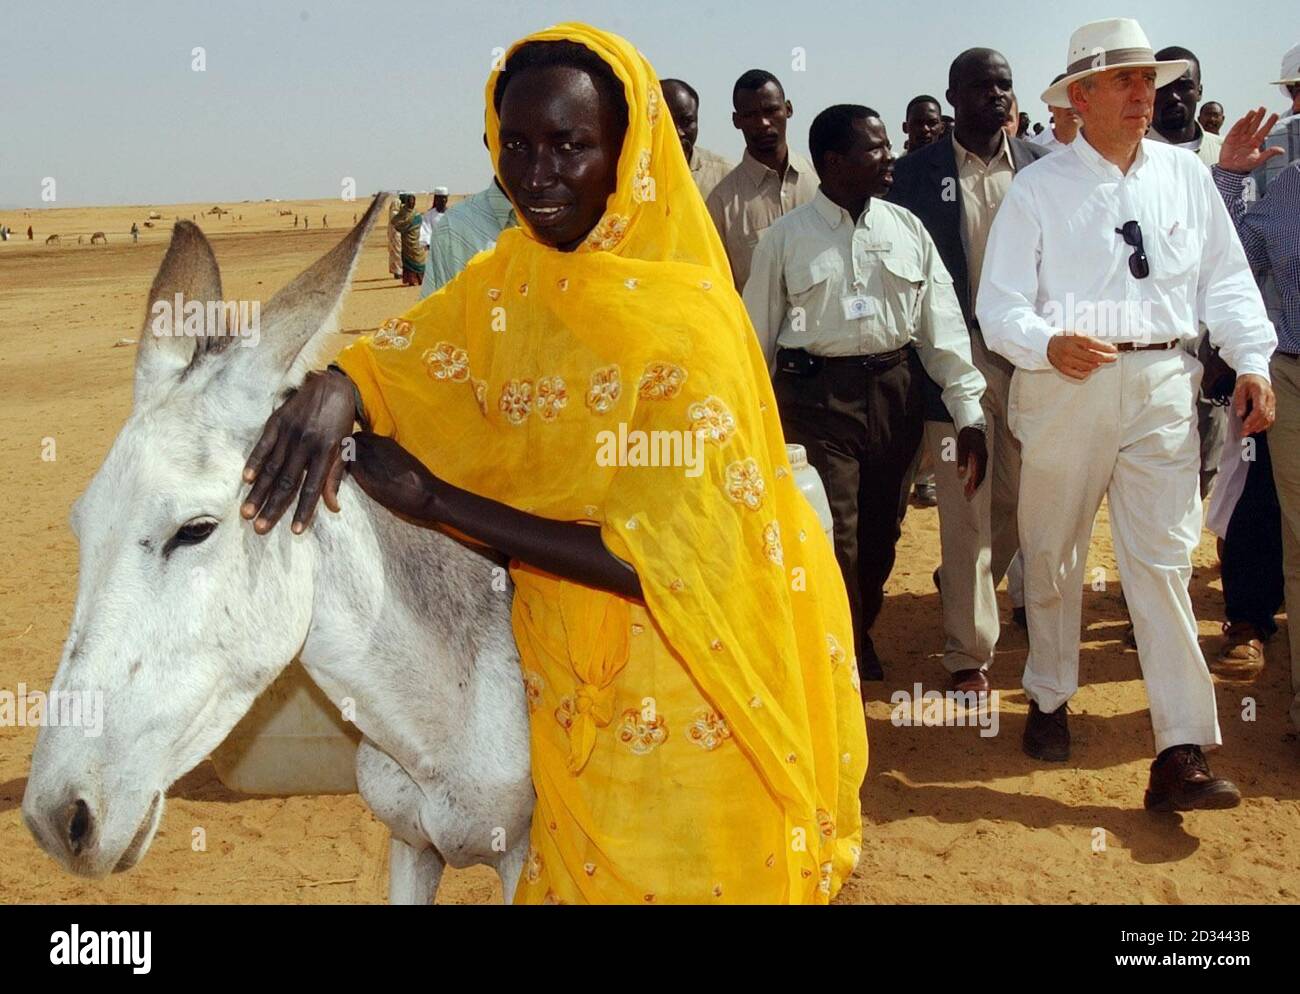 Il Segretario degli Esteri Jack Straw incontra i rifugiati in un centro di alimentazione nel campo di Abu Shouk vicino a El Fasher, nella regione del Darfur, nel nord del Sudan. Il campo - descritto da un funzionario britannico come 'Hilton' dei campi del Darfur - ospita circa 57,000 persone costrette a fuggire dai loro villaggi a seguito di una campagna di violenza da parte delle milizie arabe note come Janjaweed. Straw ha avvertito il governo sudanese che deve fare di più per proteggere i rifugiati che fuggono dalla violenza nel Darfur dopo aver visto per sé le condizioni in cui vivono. Foto Stock